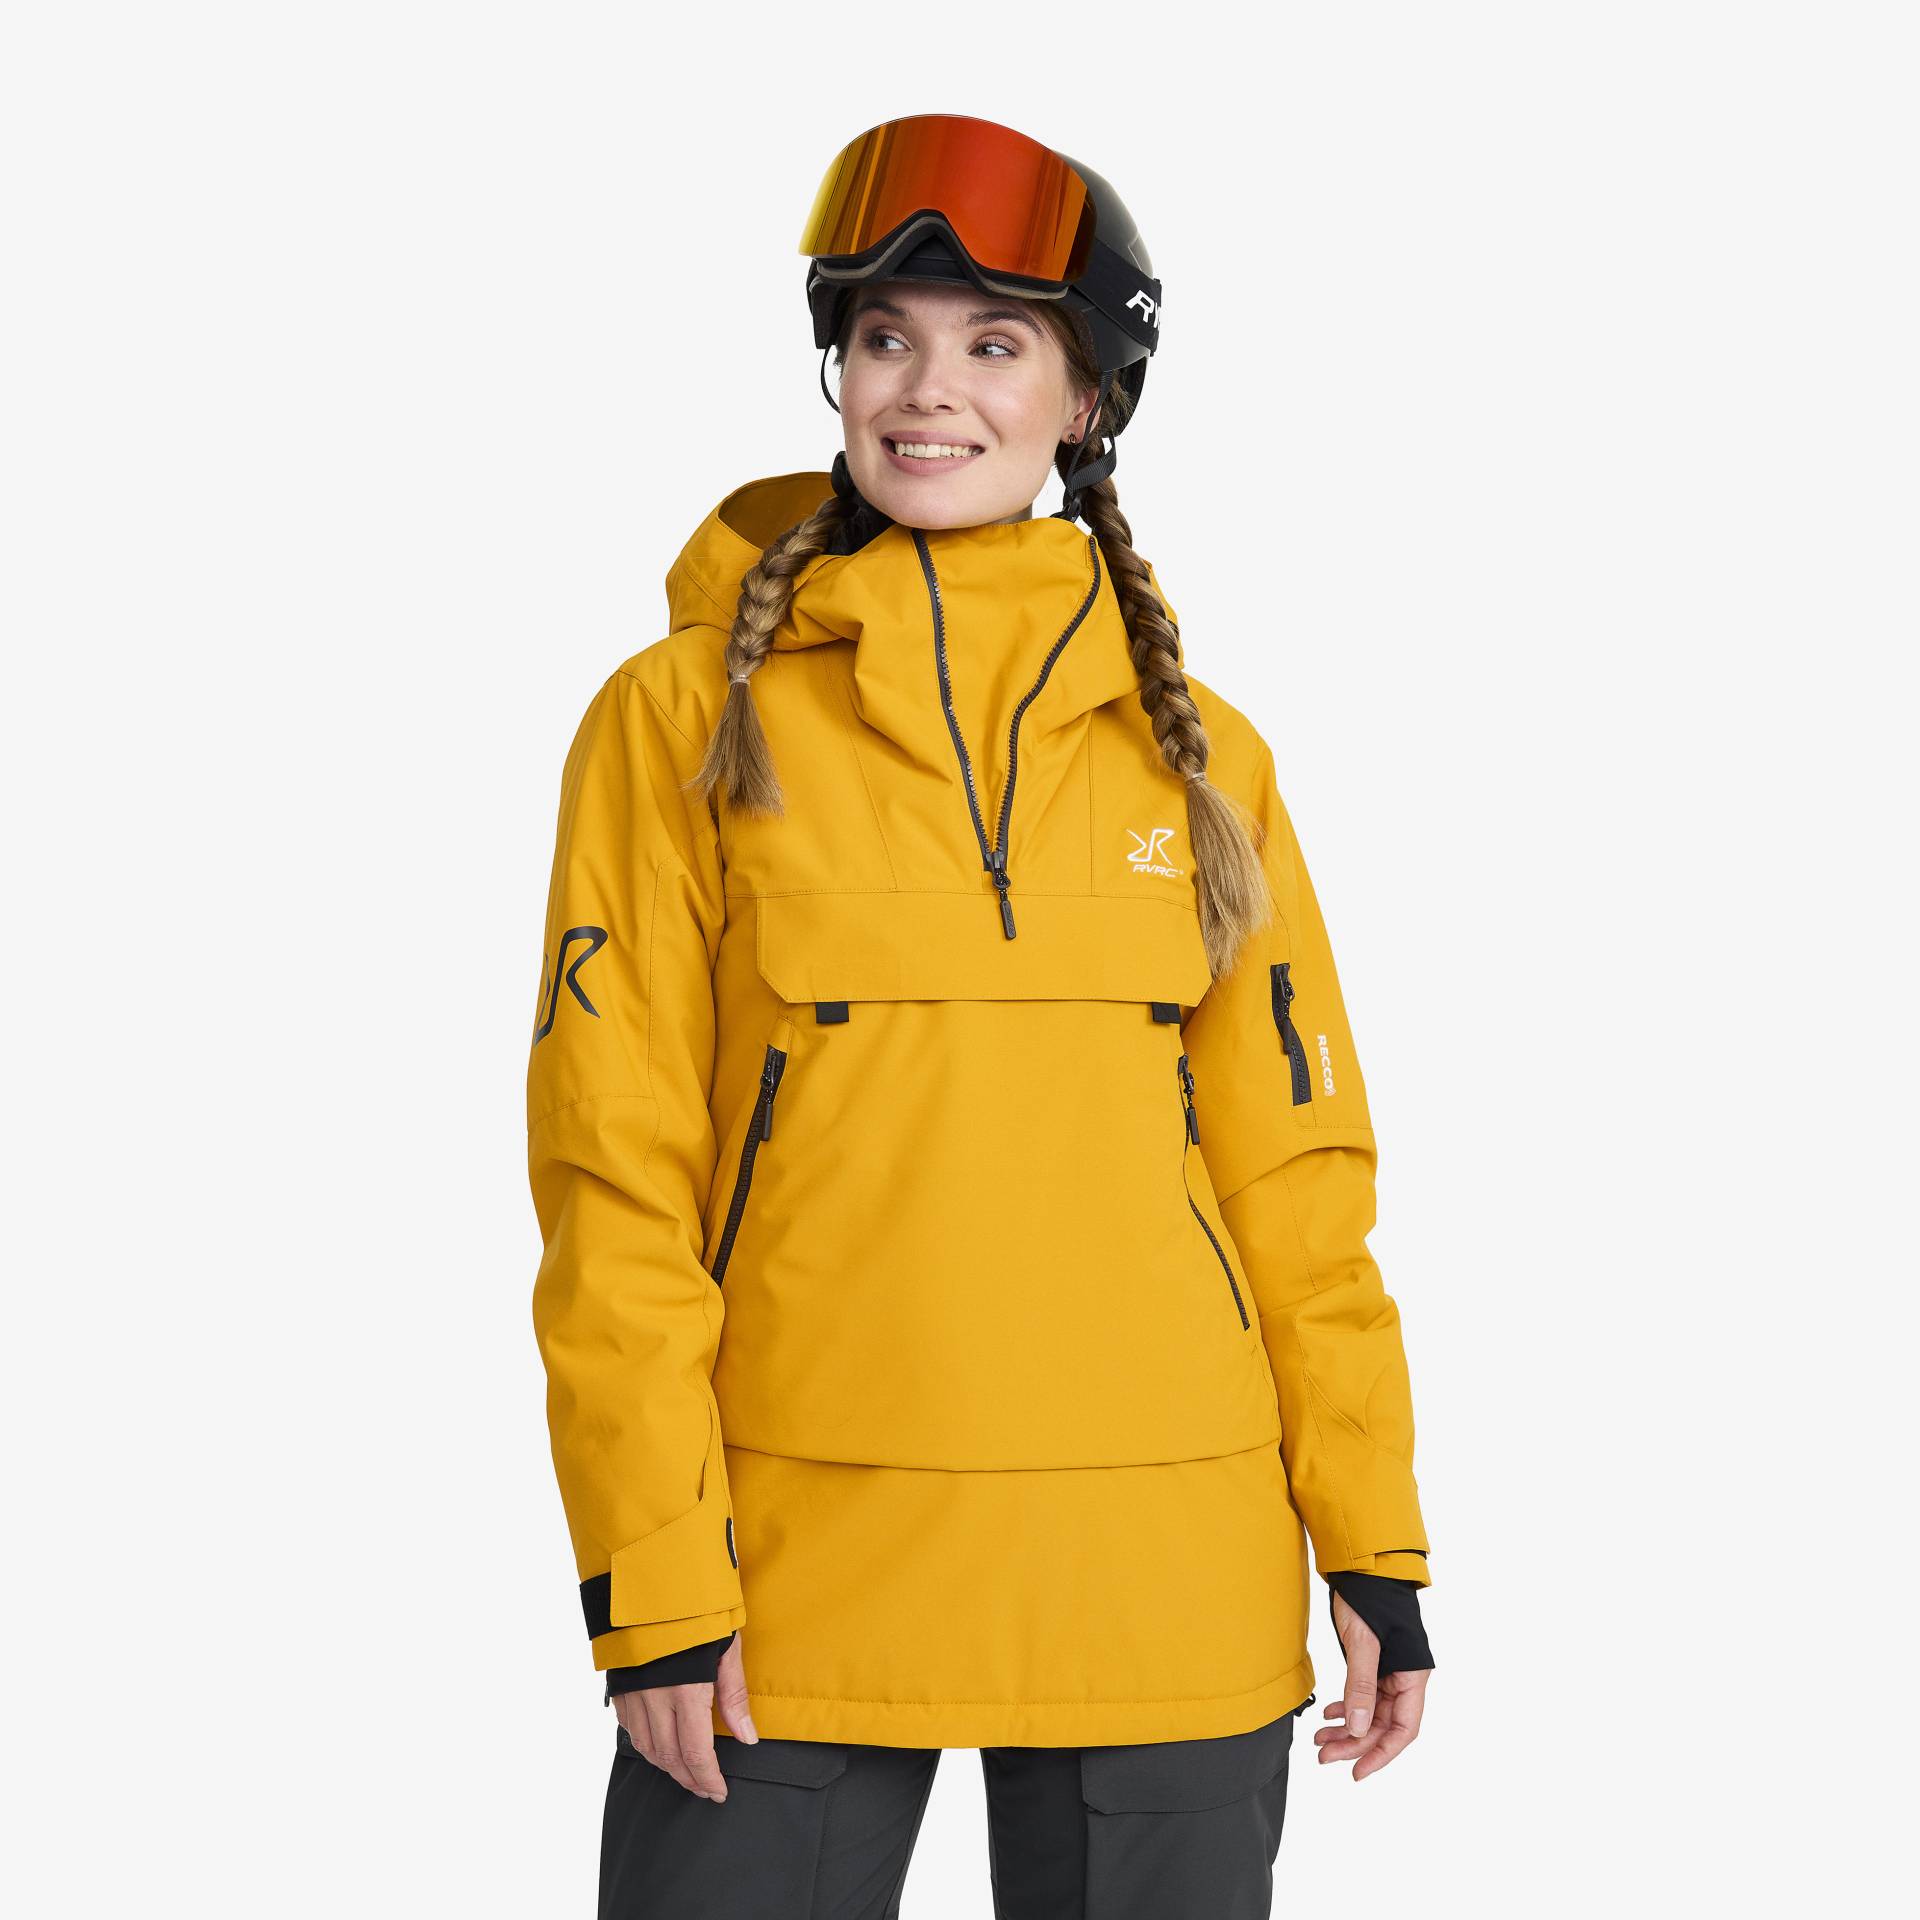 Halo 2L Insulated Ski Anorak Damen Golden Yellow, Größe:XL - Skijacken von RevolutionRace